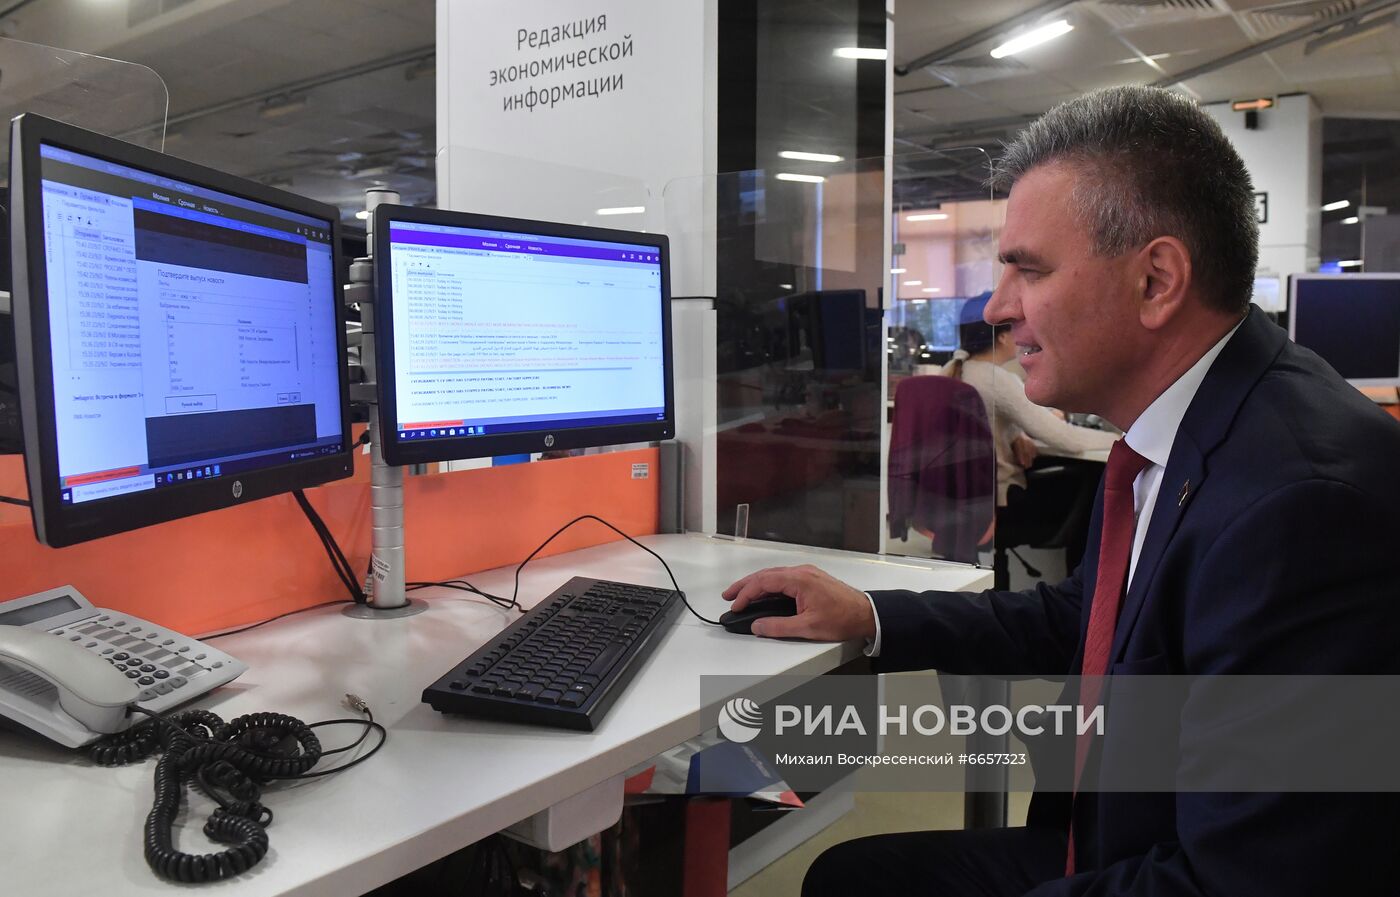 Глава Приднестровья посетил МИА "Россия сегодня"